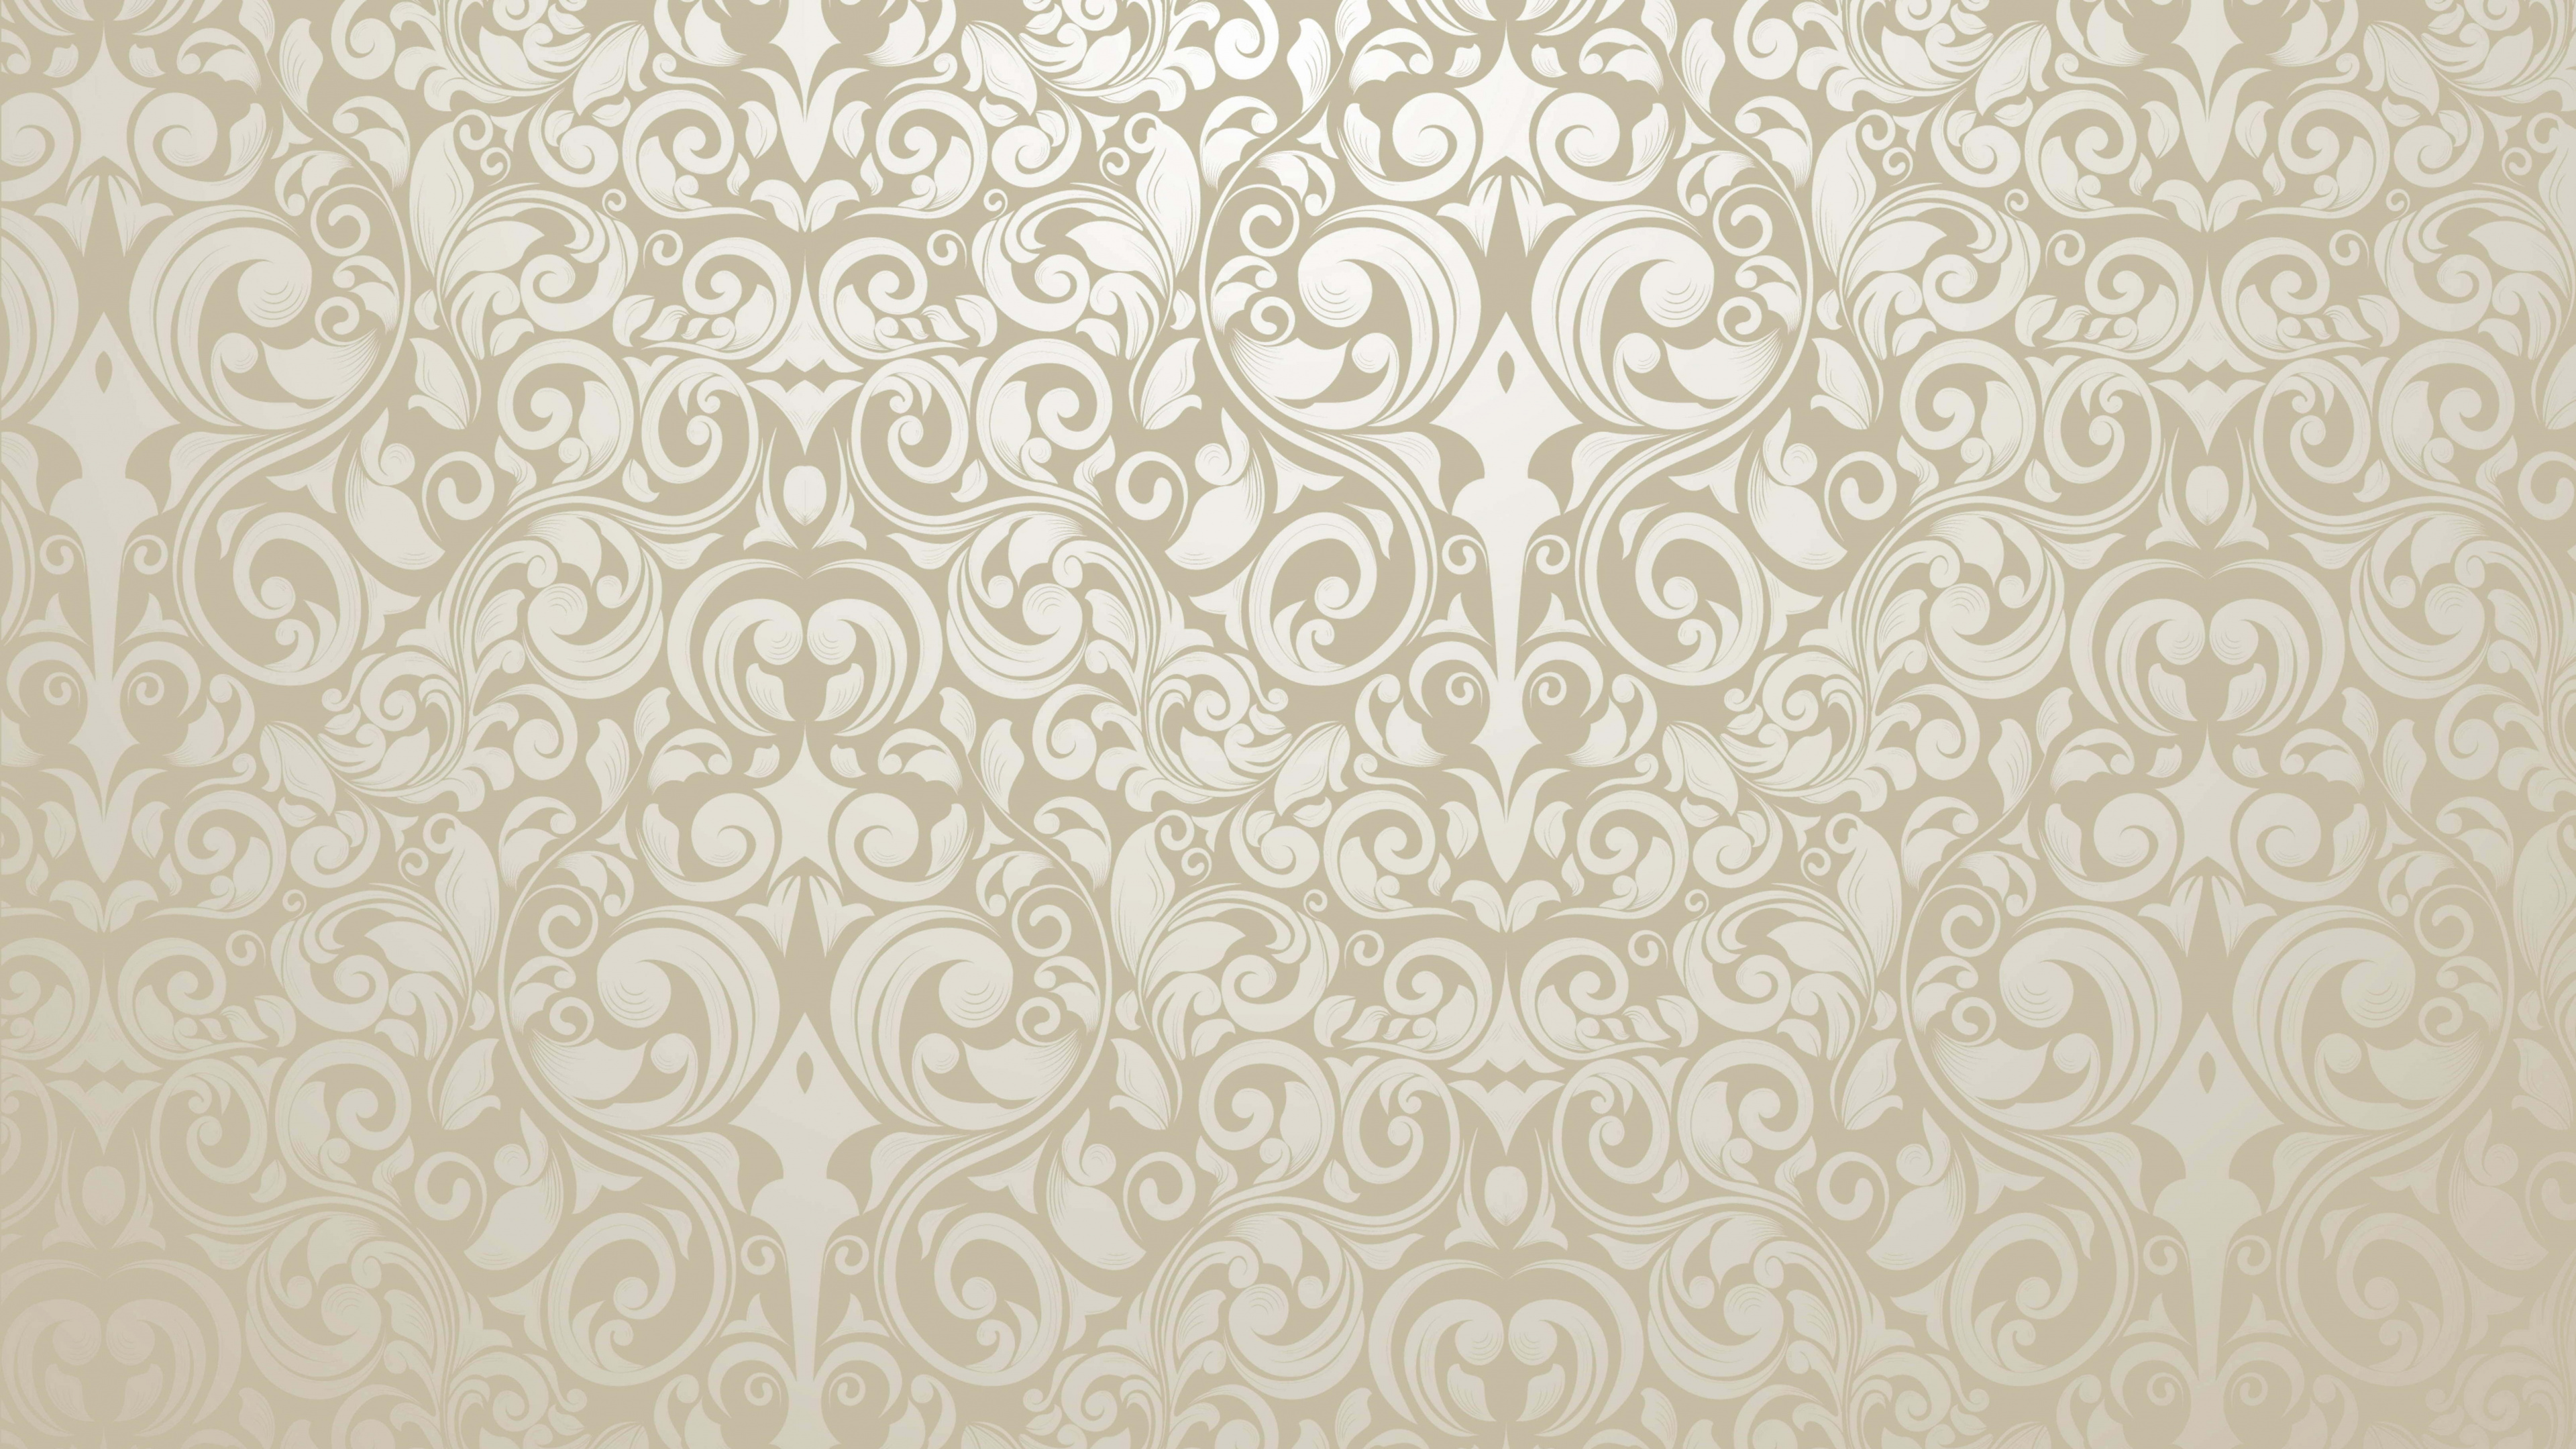 Textile Floral Blanc et Noir. Wallpaper in 3840x2160 Resolution